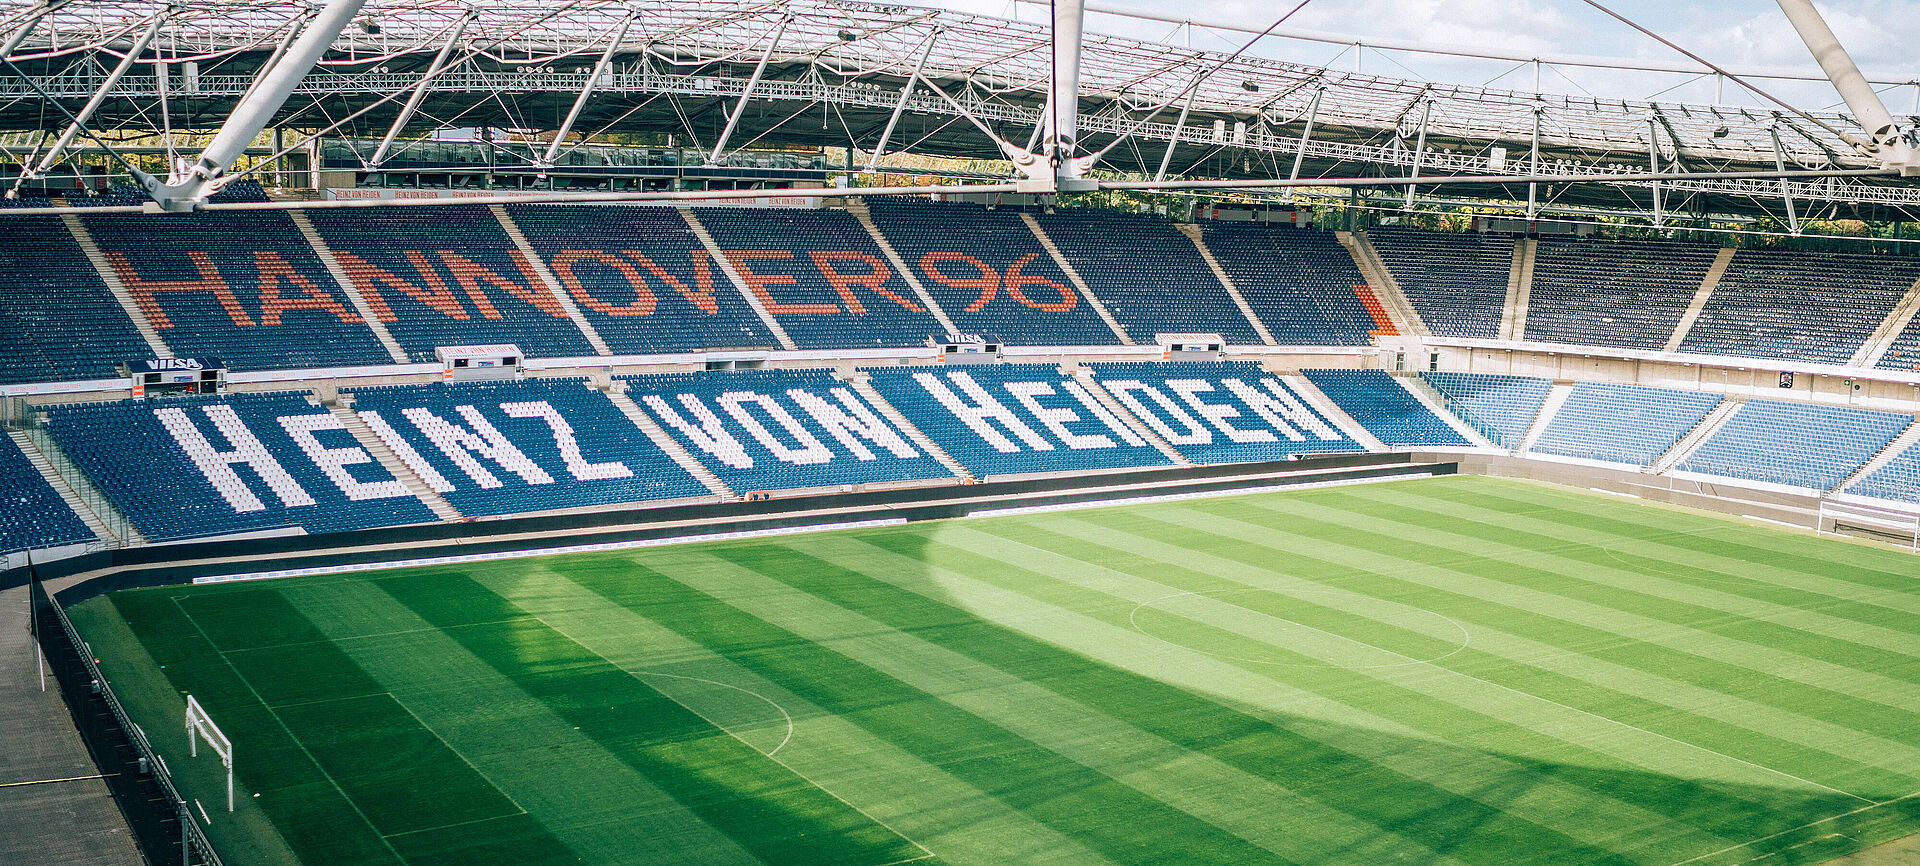 Der Innenraum des Heinz-von-Heiden-Stadions von Hannover 96 bei Sonnenschein.